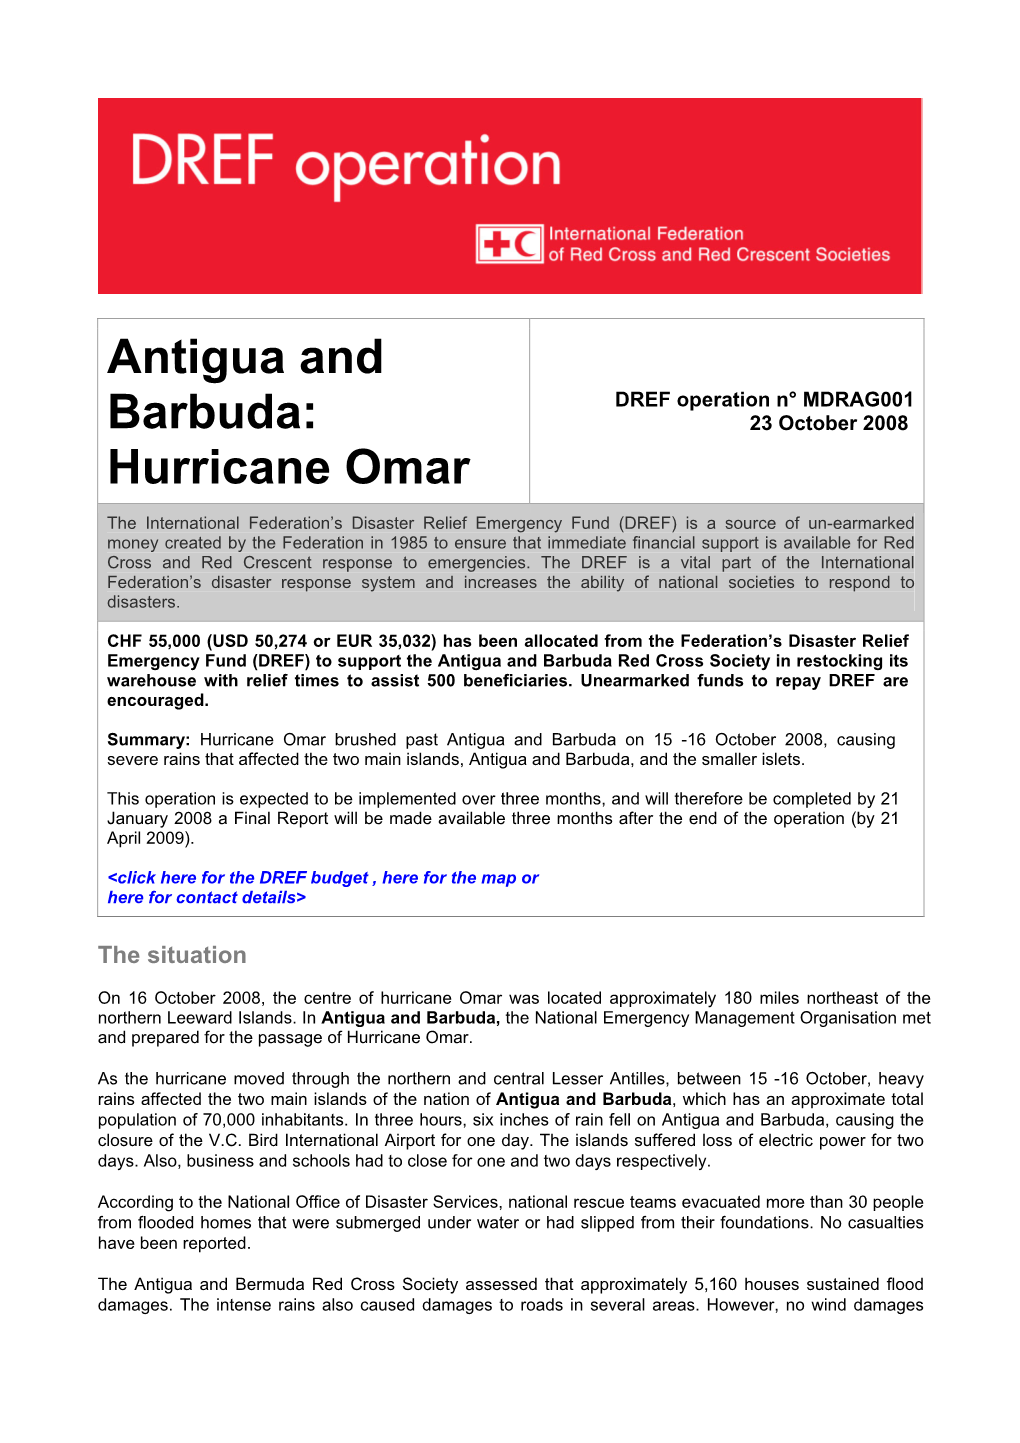 Antigua and Barbuda: Hurricane Omar MDRAG001